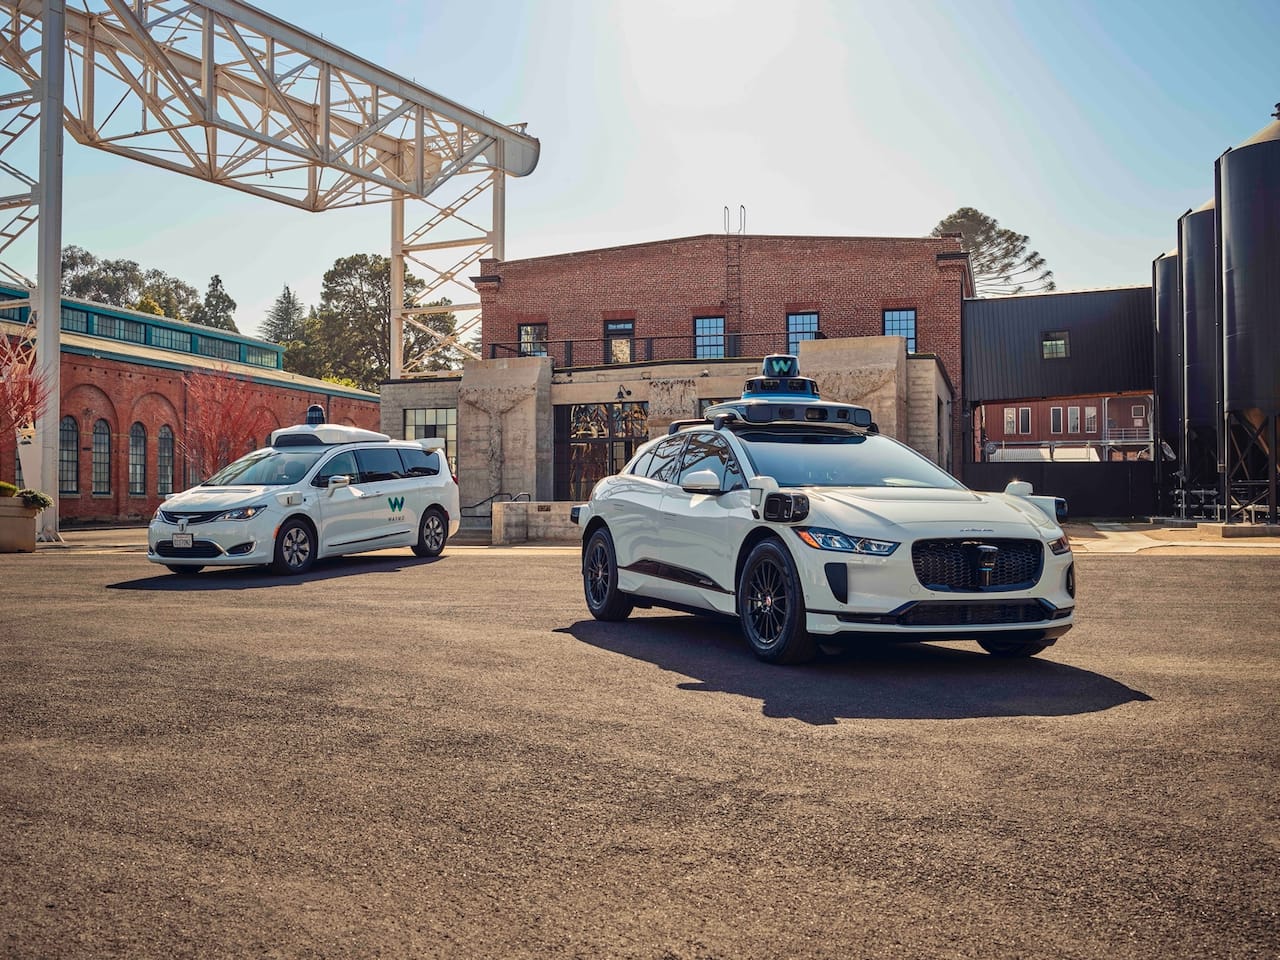 Waymo's autonomously driven Jaguar I-PACE electric SUV